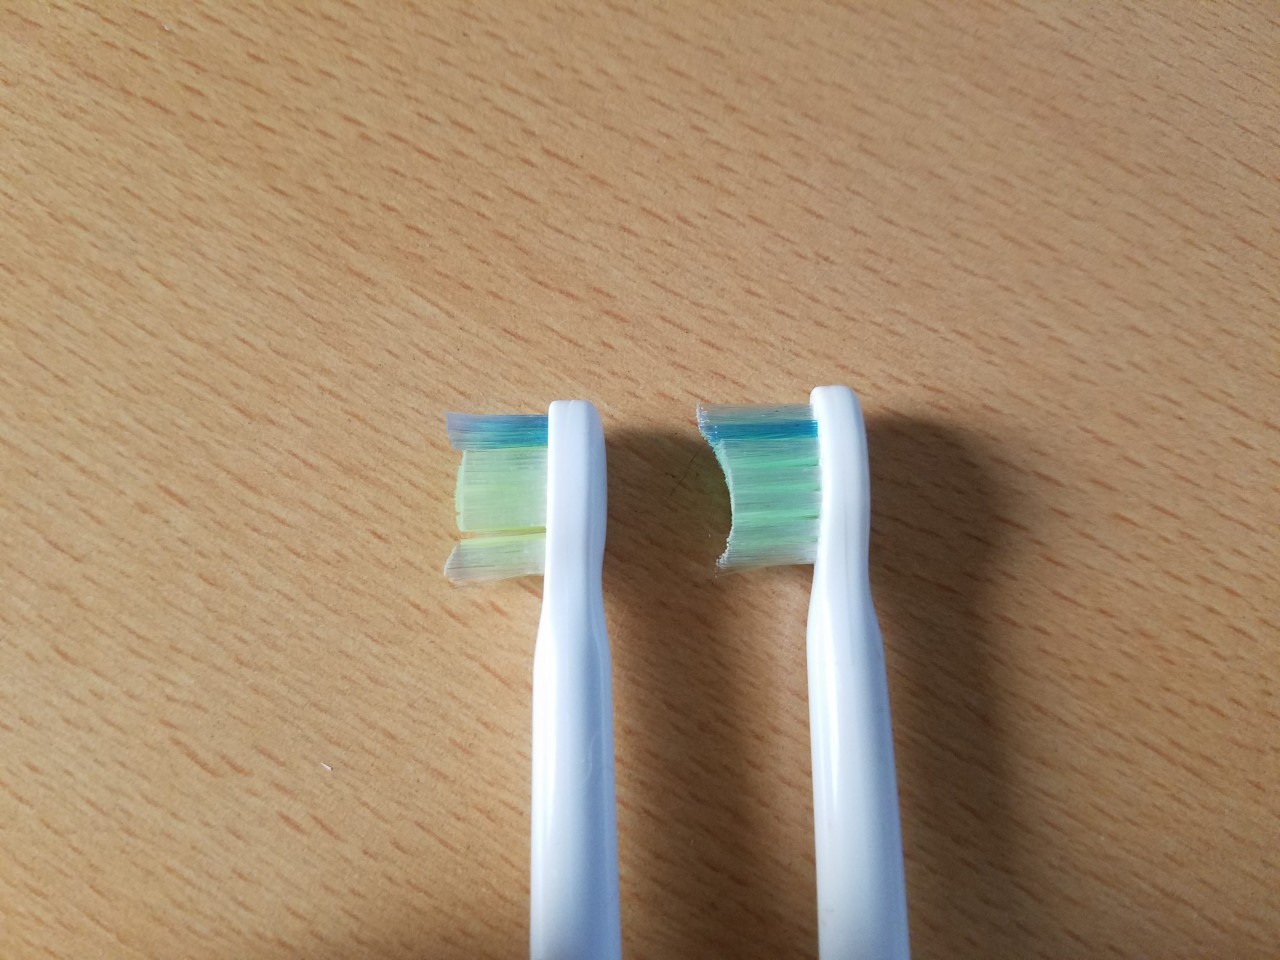 フィリップスの電動歯ブラシ ソニッケア ダイヤモンドクリーンの互換替えブラシは意外と普通に使える歯ブラシだった – Dream Seed.